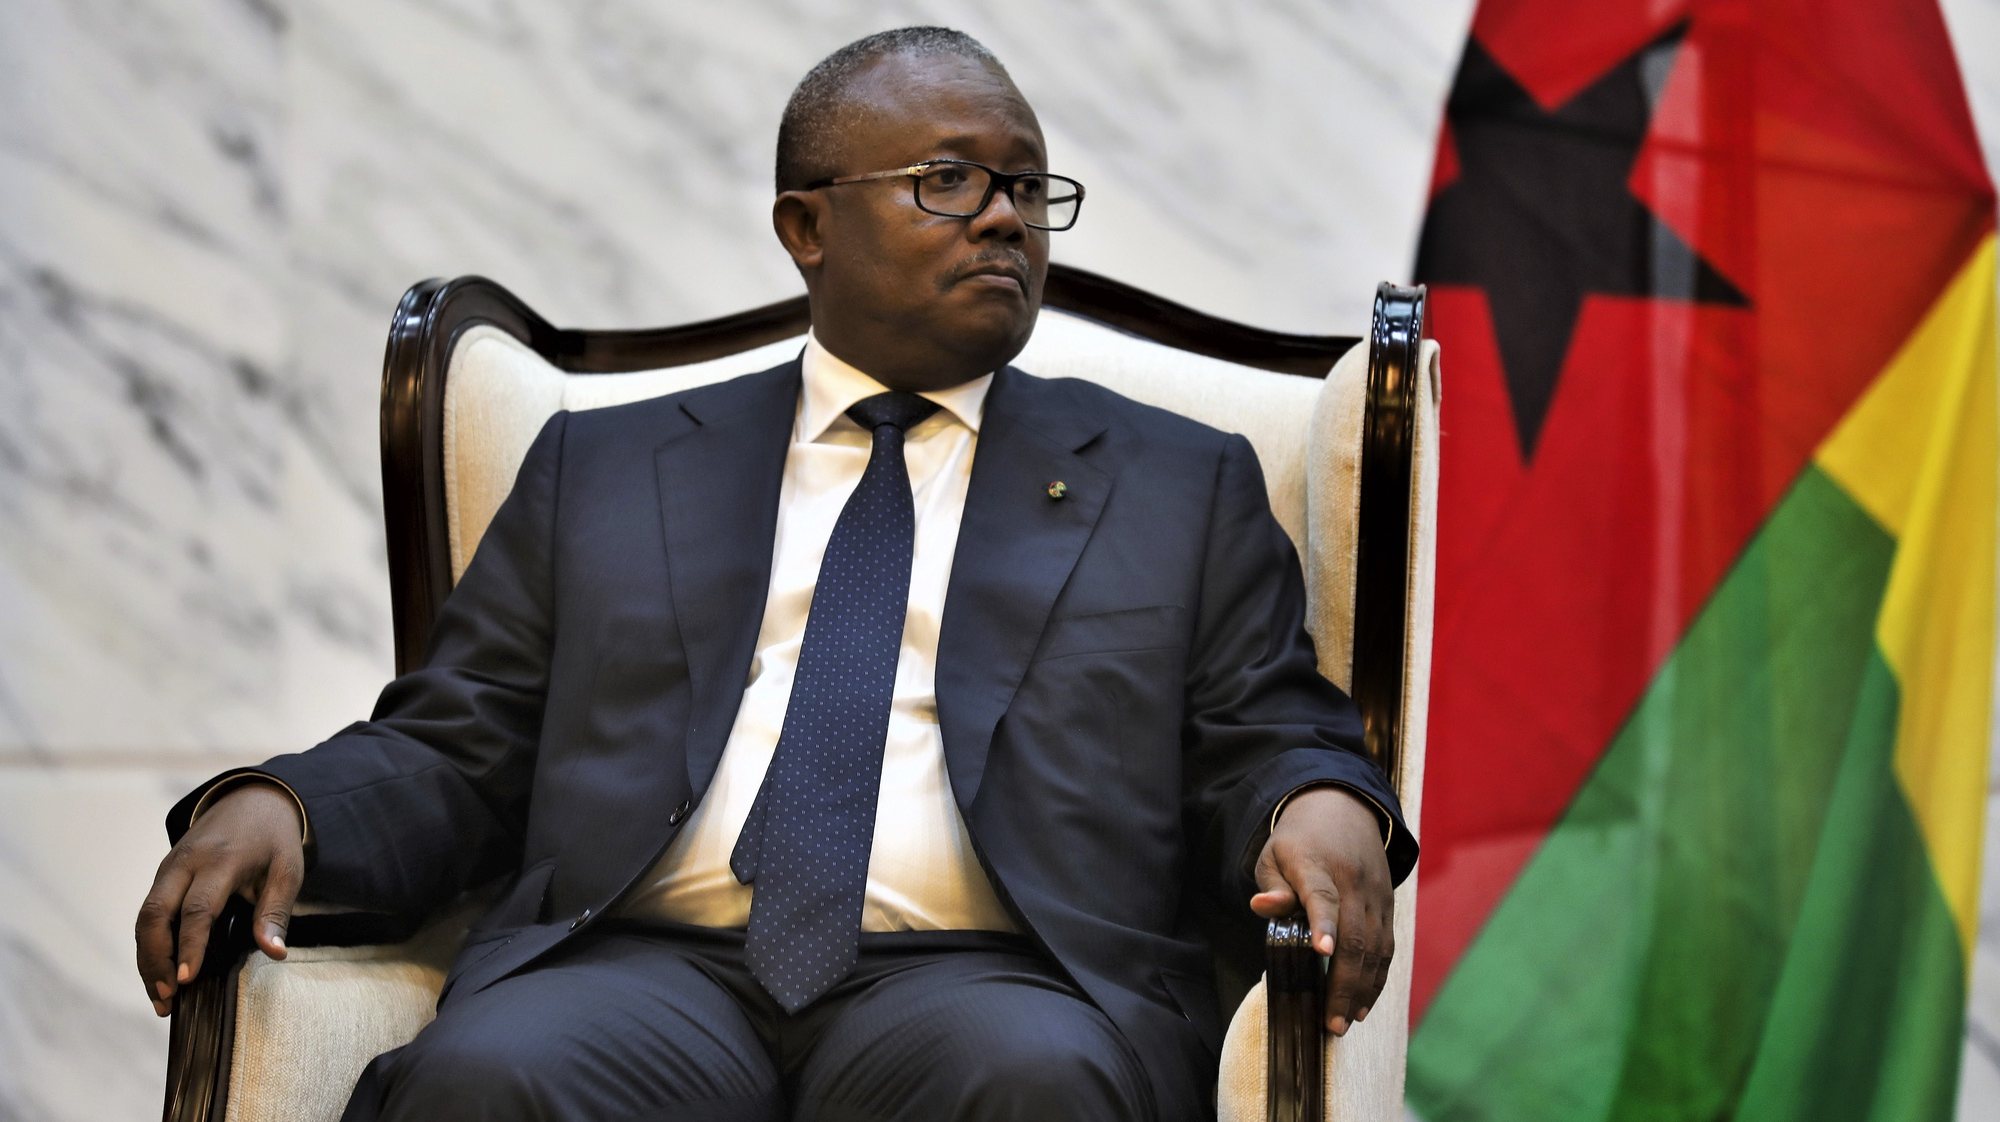 Presidente da Guiné-Bissau, Umaro Sissoco Embaló, durante um encontro com o Presidente da República de Moçambique, Filipe Nyusi (ausente na fotografia), no palácio presidencial, em Maputo, Moçambique, 19 de junho de 2024. O Presidente da Guiné-Bissau, iniciou hoje uma visita de Estado de três dias a Moçambique com a cooperação entre os dois países na agenda. LUÍSA NHANTUMBO/LUSA